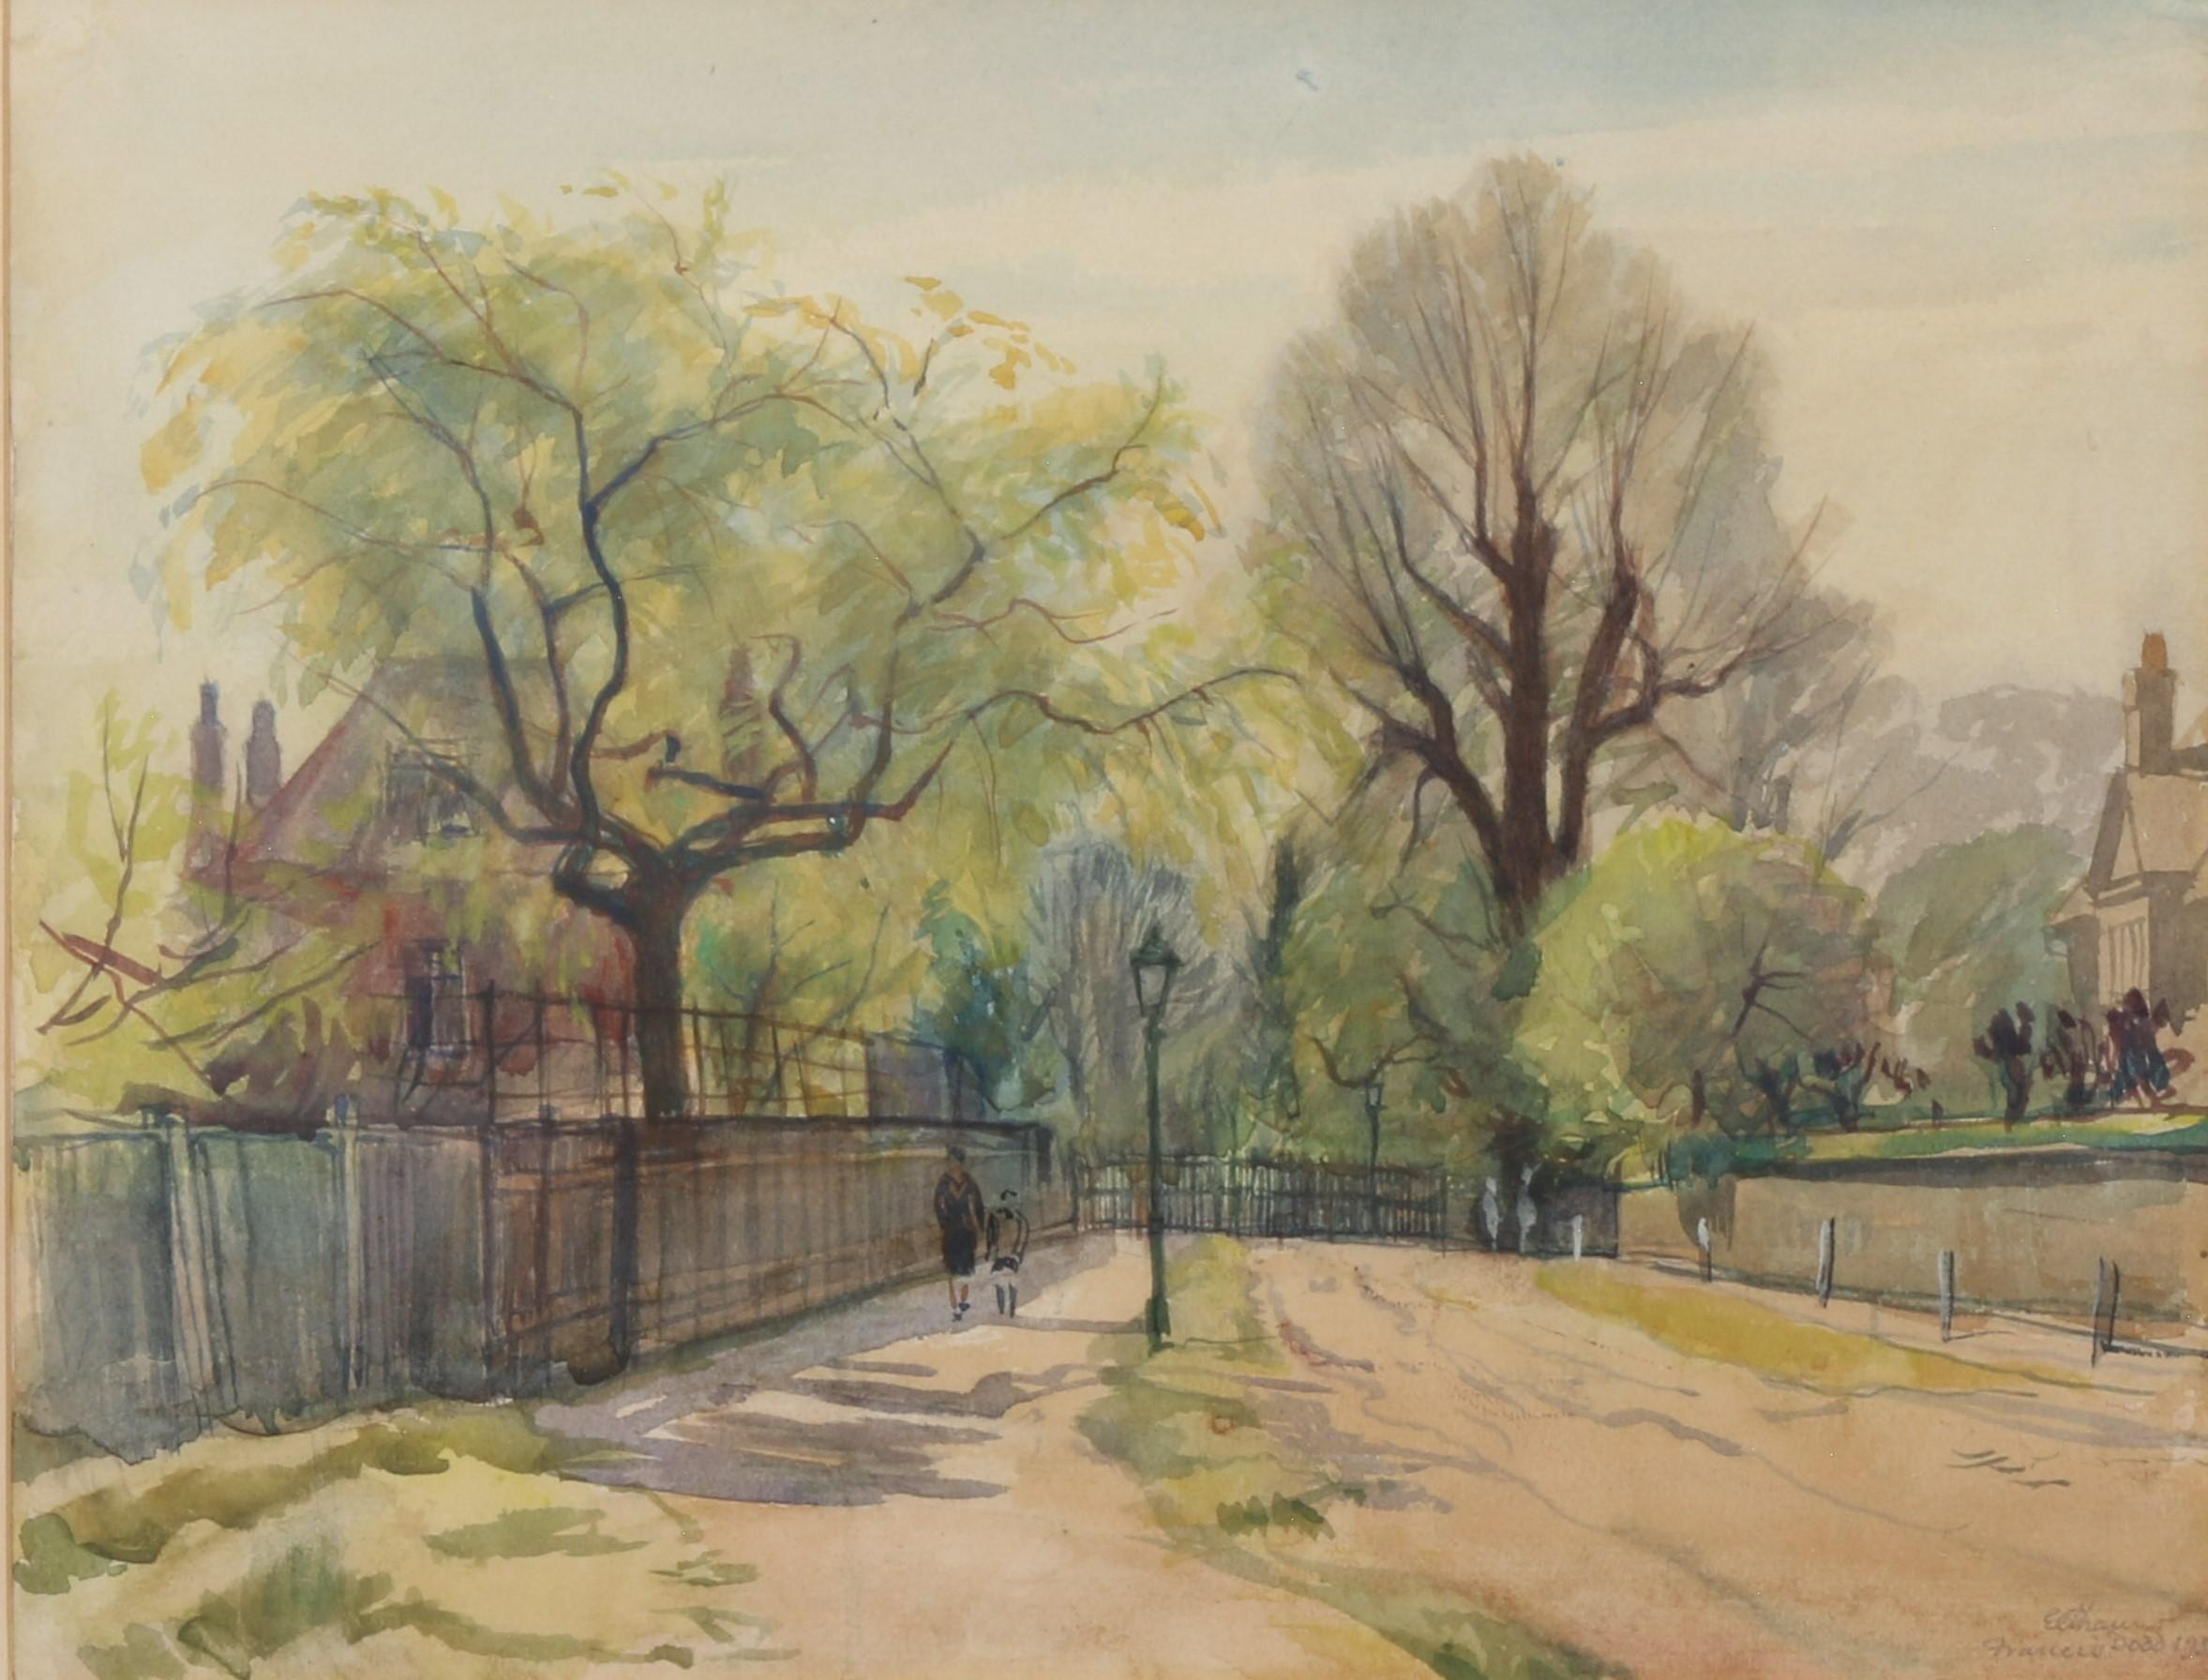 Francis Dodd R.A. 1874-1949, britischer Porträt- und Landschaftsmaler, Zeichner und Grafiker. Eltham, London, liegt ganz in der Nähe von Blackheath, wo Dodd lebte, einer Gegend, die ihm gut bekannt war und die er zu Fuß erreichen konnte. Es ist ein